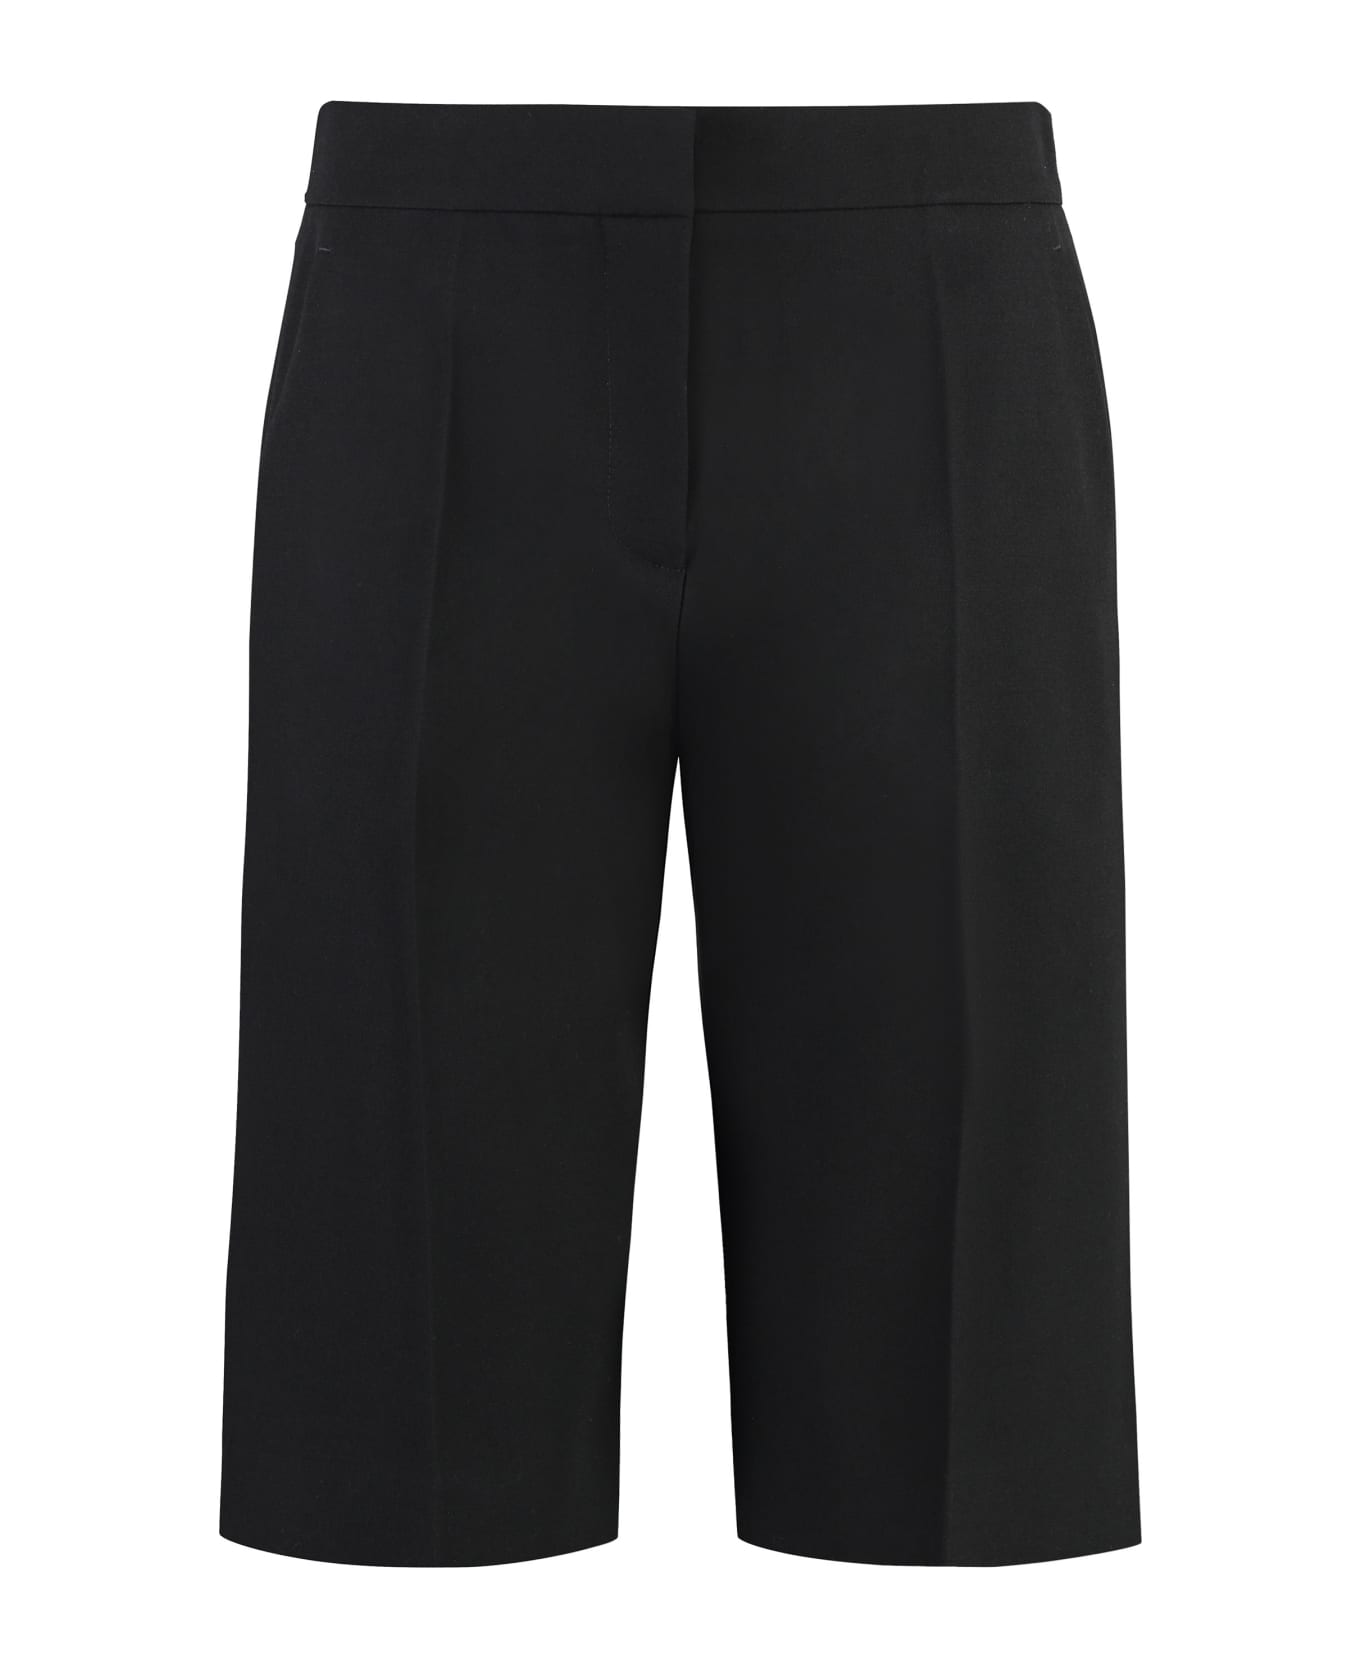 Givenchy Wool Shorts - black ボトムス